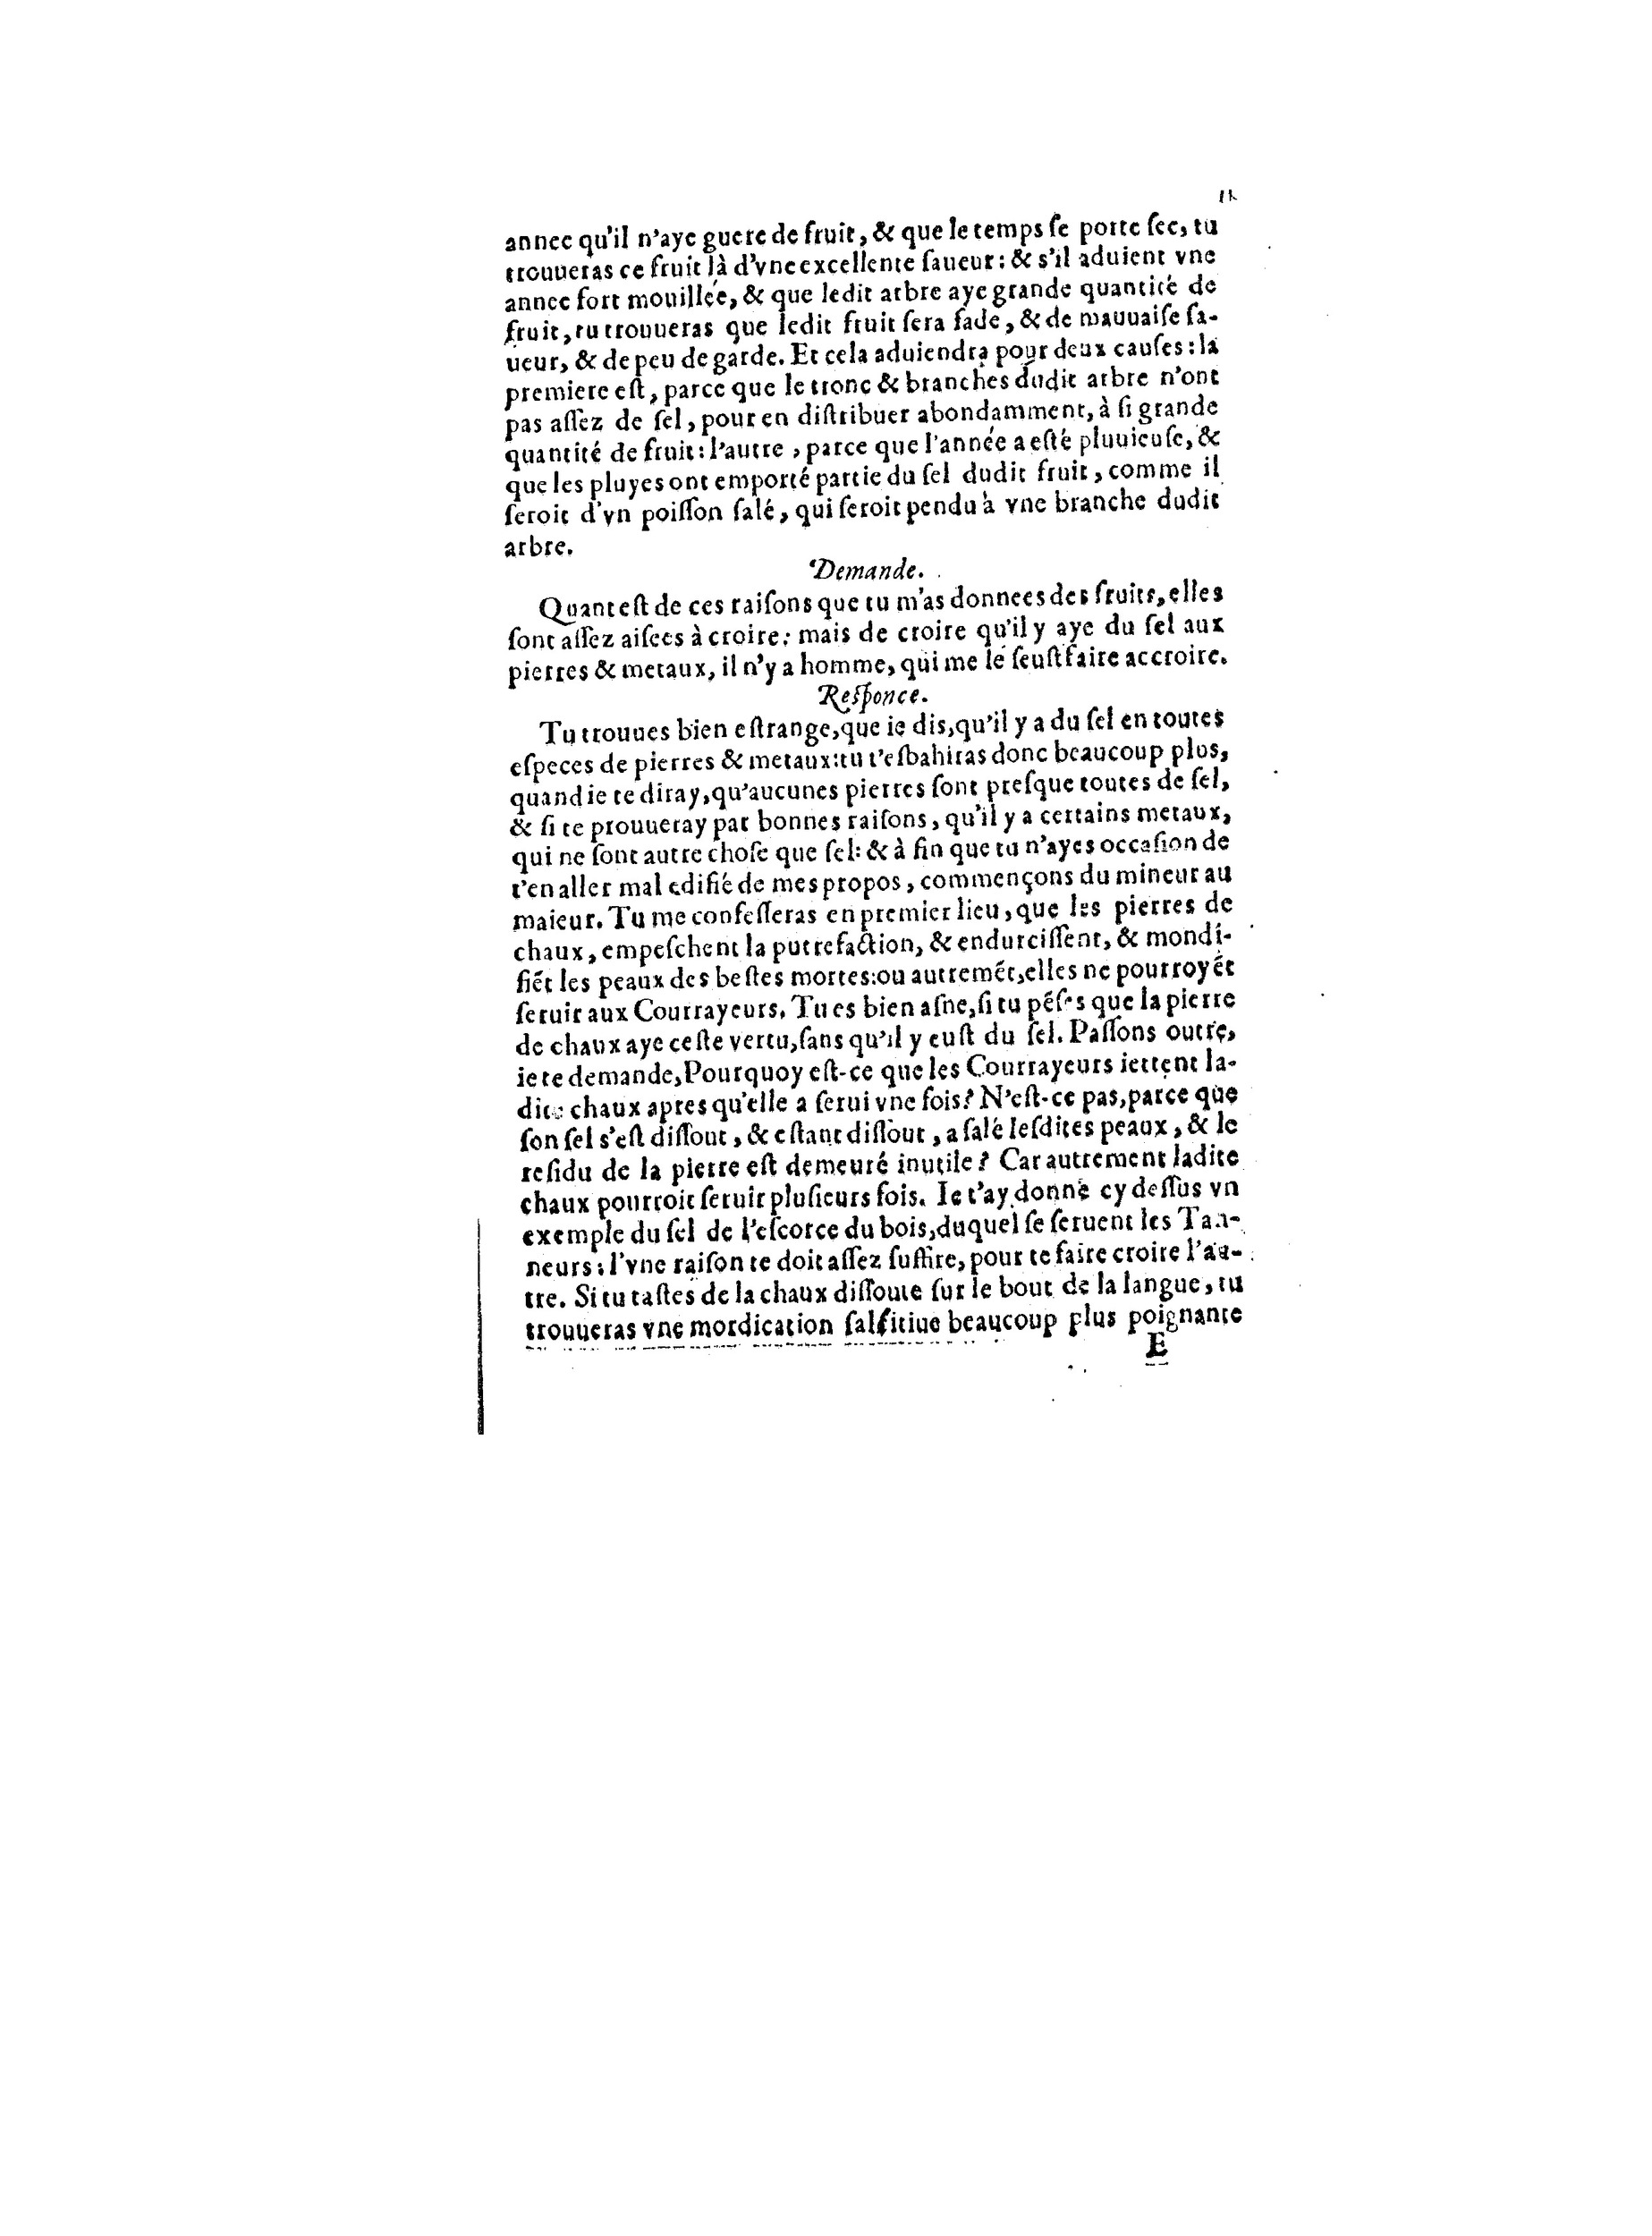 1563 Recepte veritable Berton_BNF_Page_036.jpg